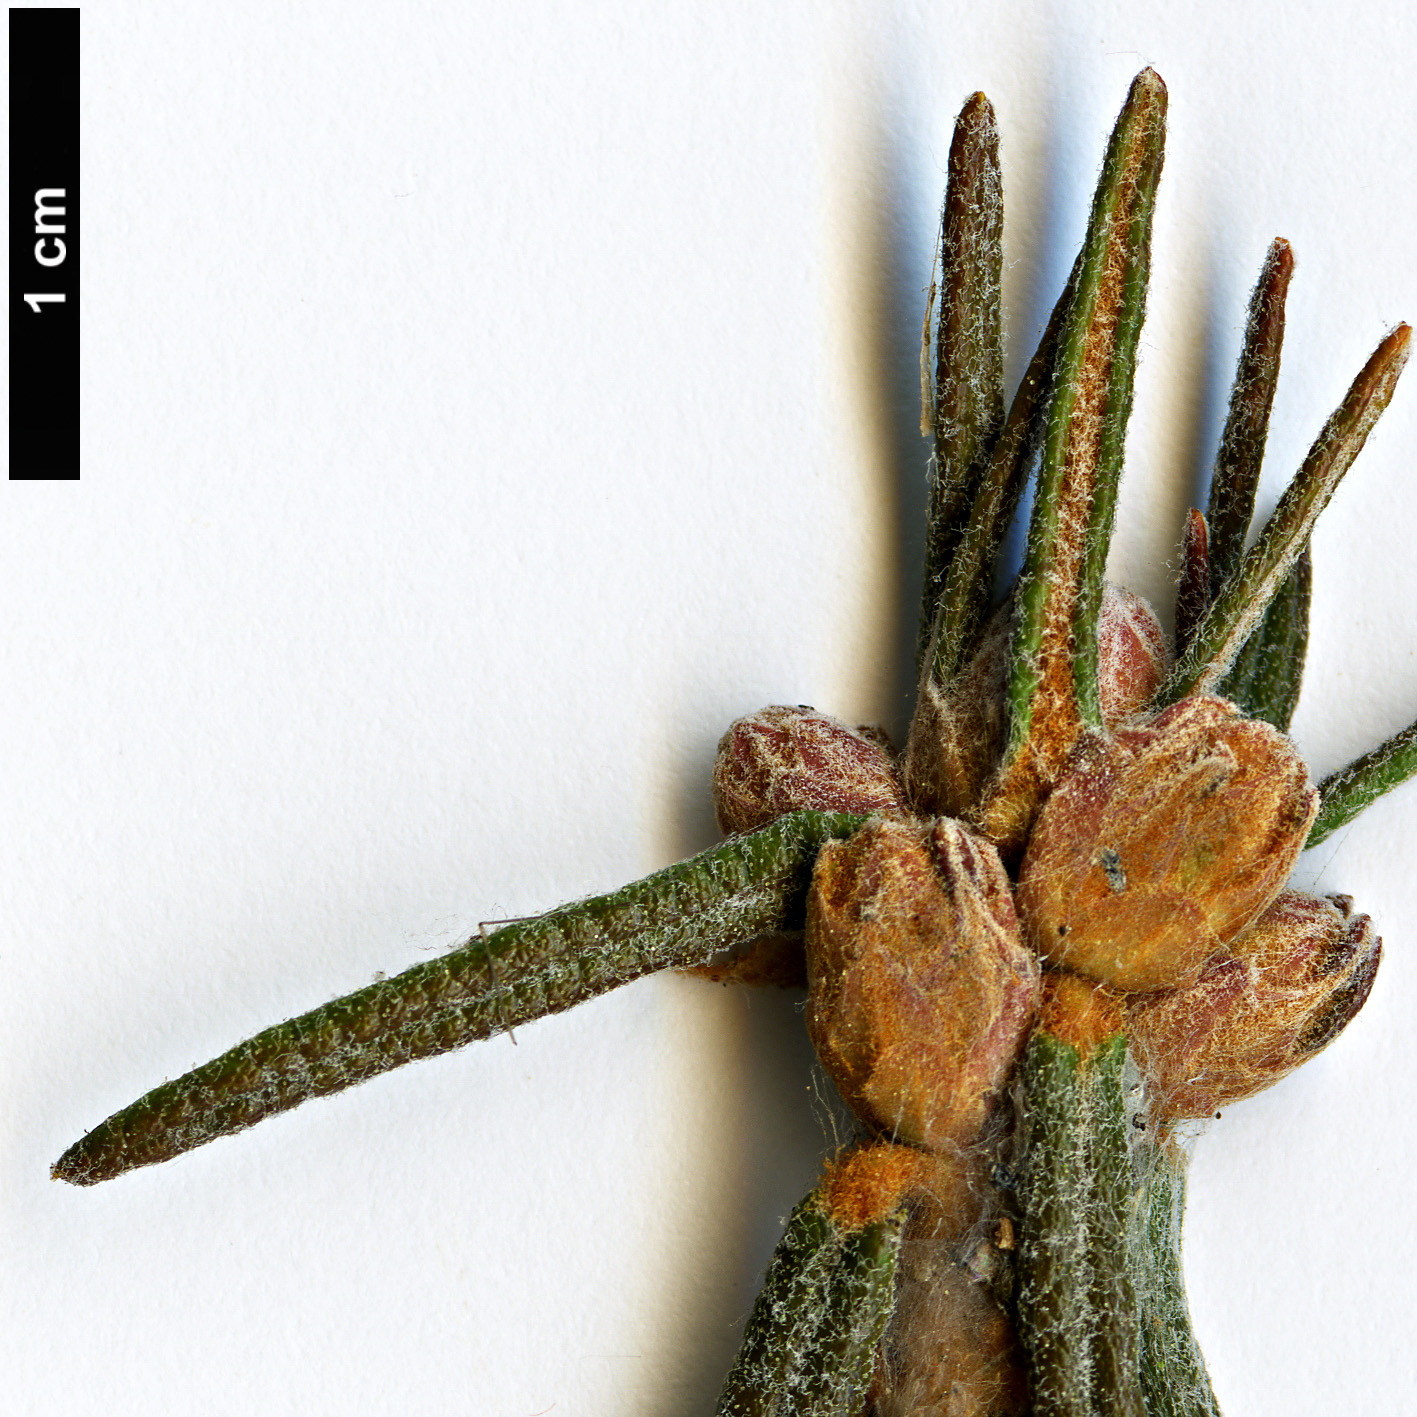 High resolution image: Family: Ericaceae - Genus: Rhododendron - Taxon: tomentosum - SpeciesSub: subsp. arcticum